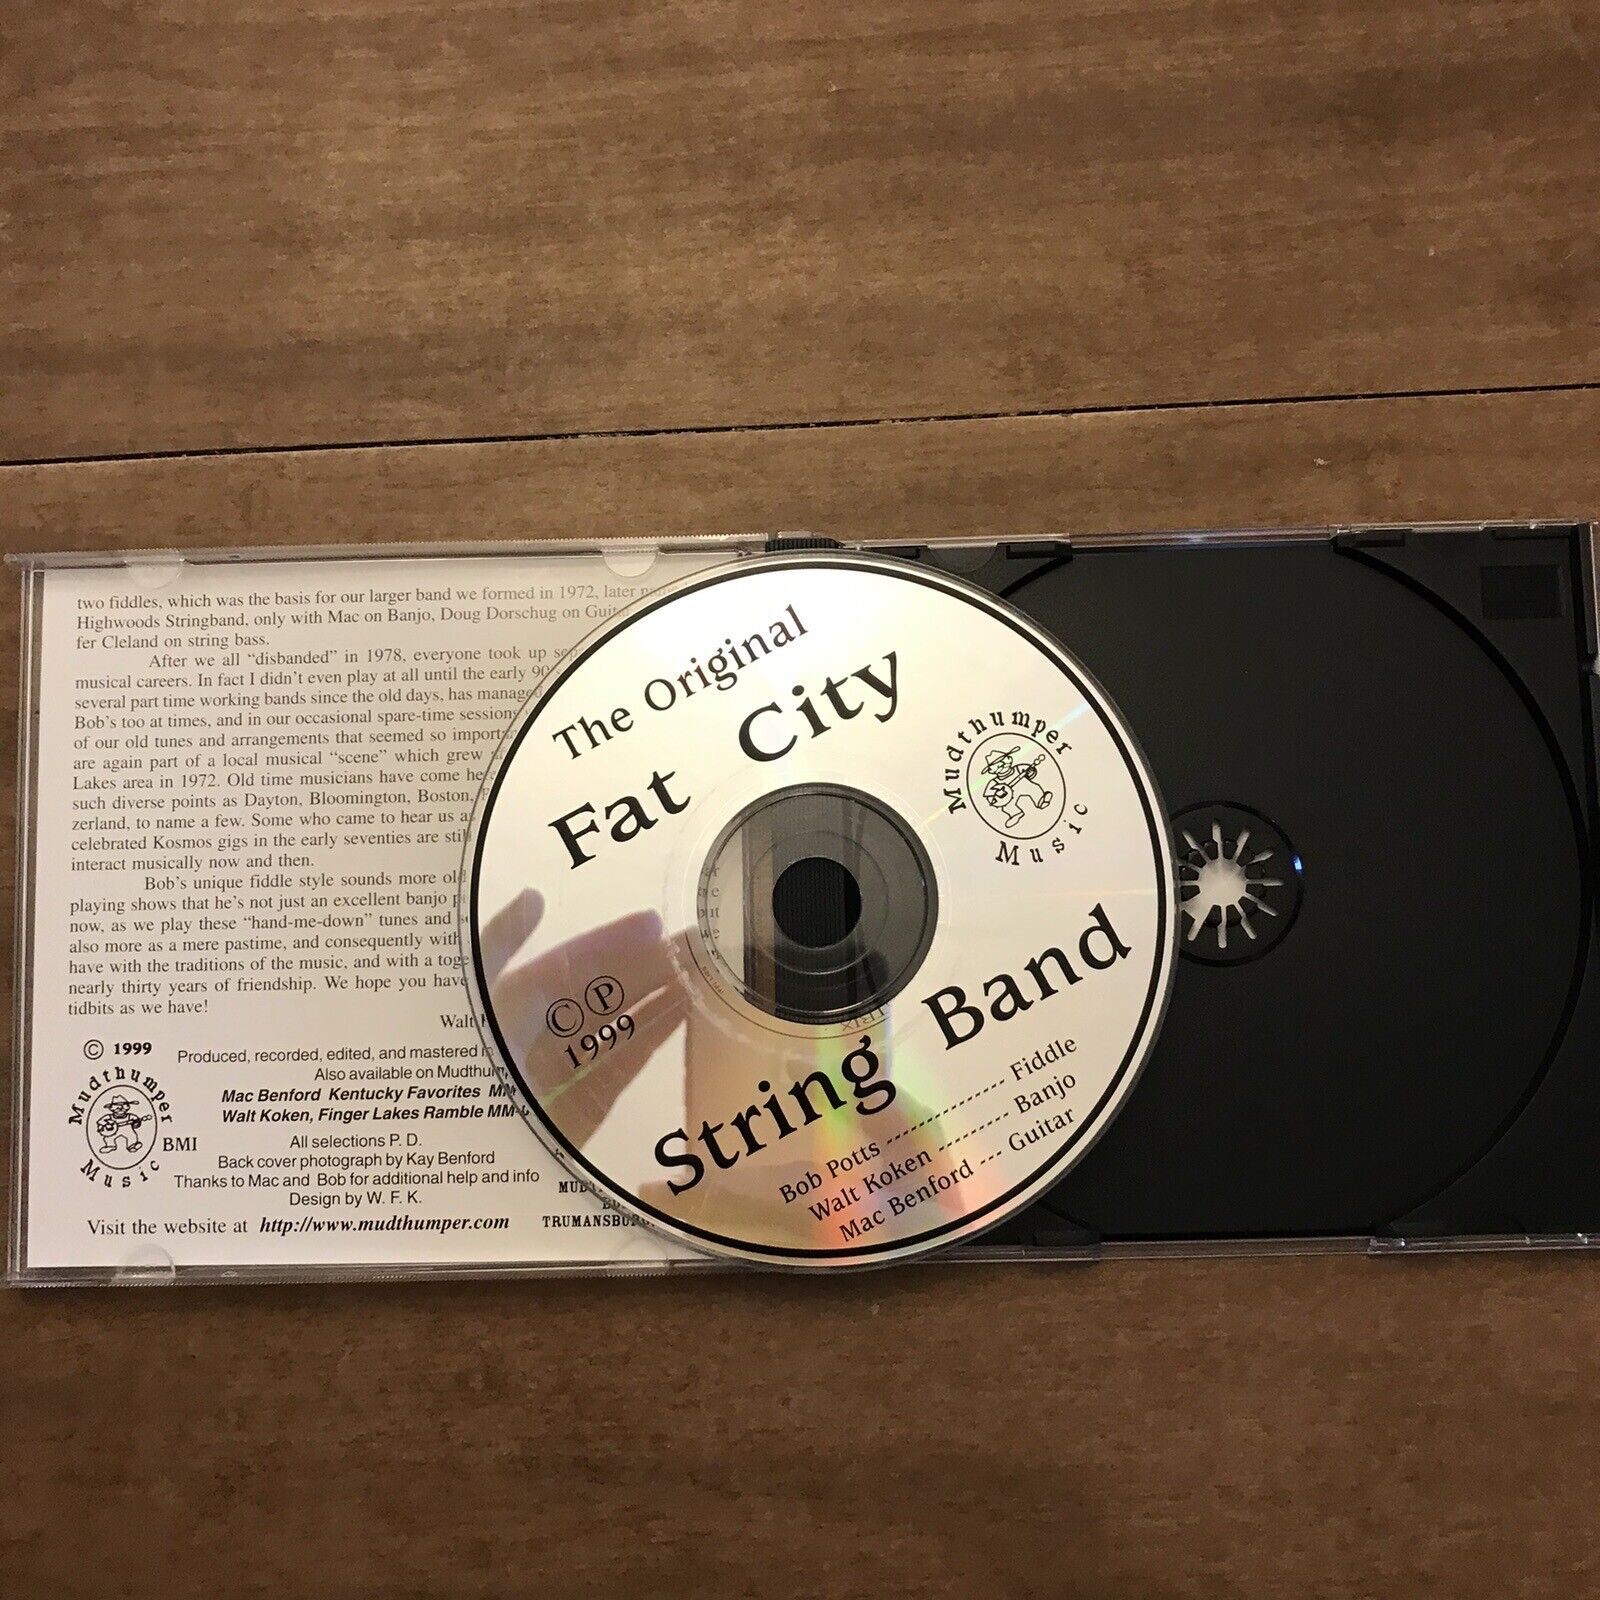 ORIGINAL FAT CITY STRING BAND CD 1999 OOP Bluegrass Appalachian Music Walt Koken